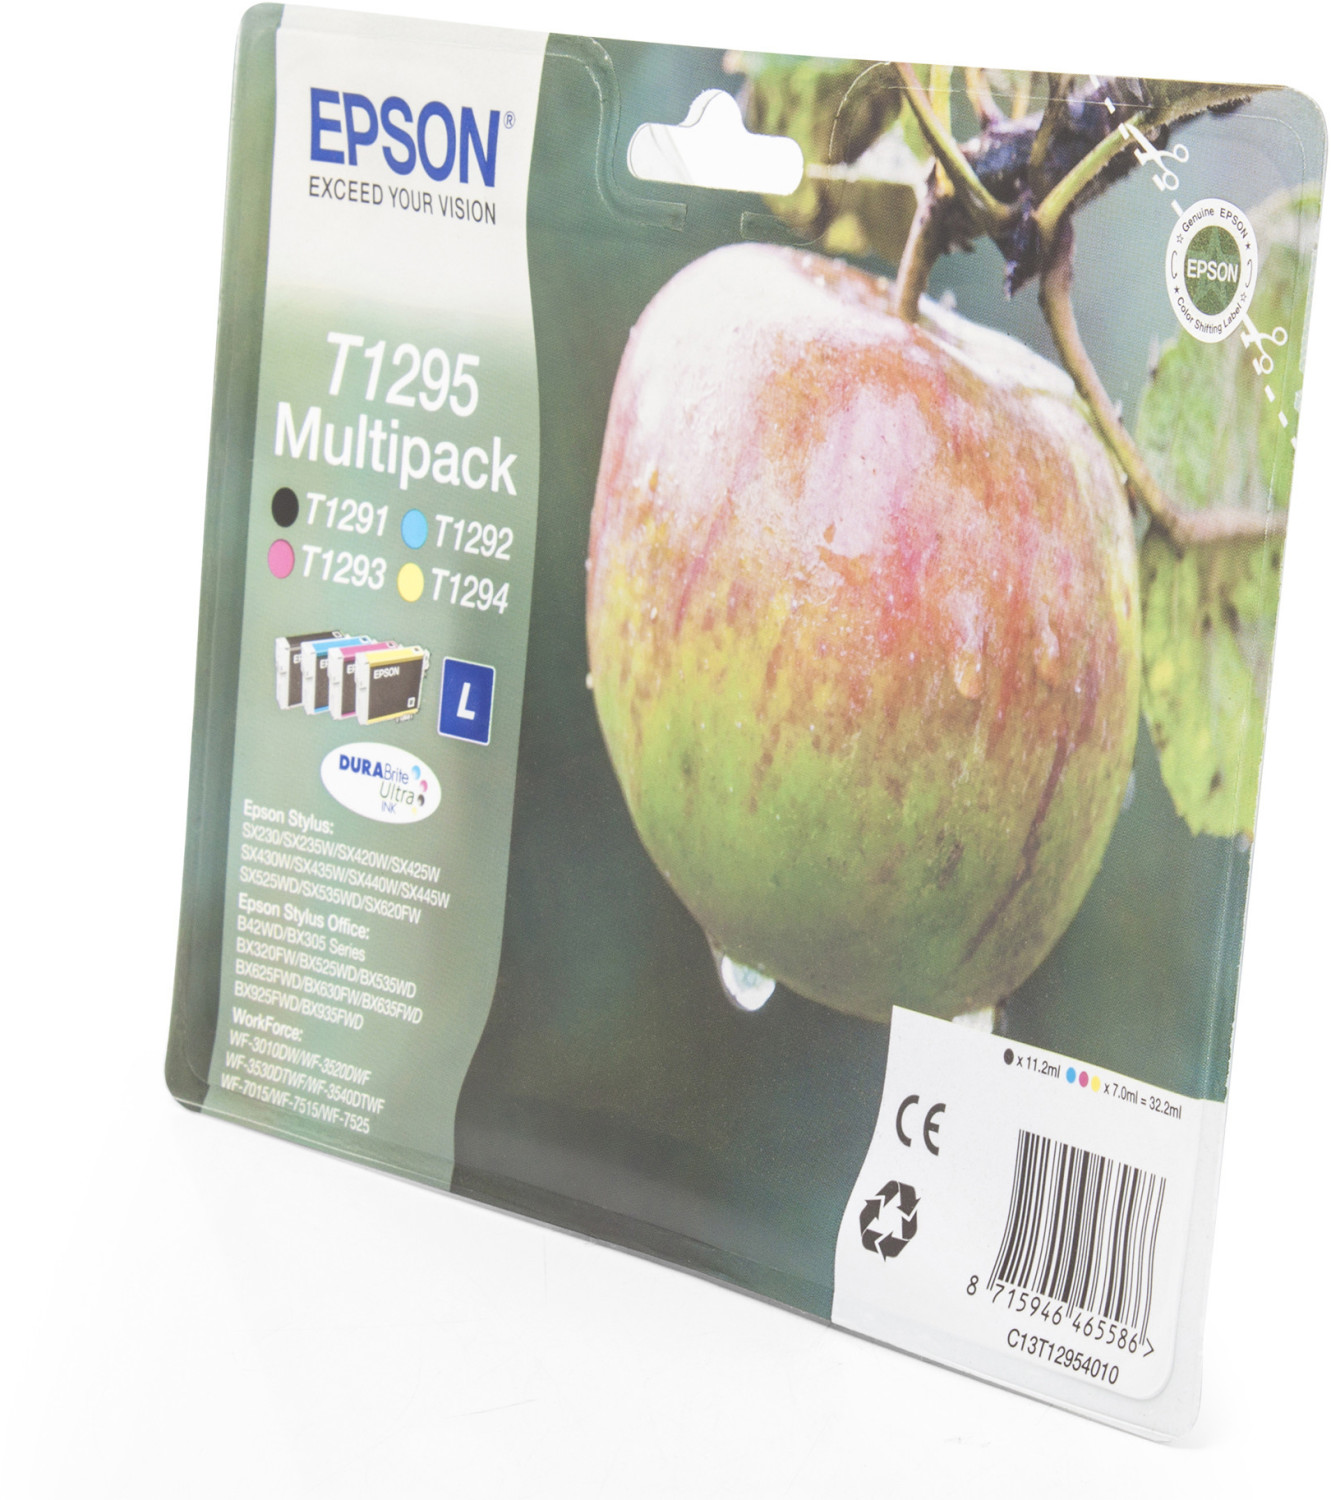 Epson T1285 Multipack - pack de 4 - noir, jaune, cyan, magenta - originale  - cartouche d'encre (alternative pour : Epson T1285)